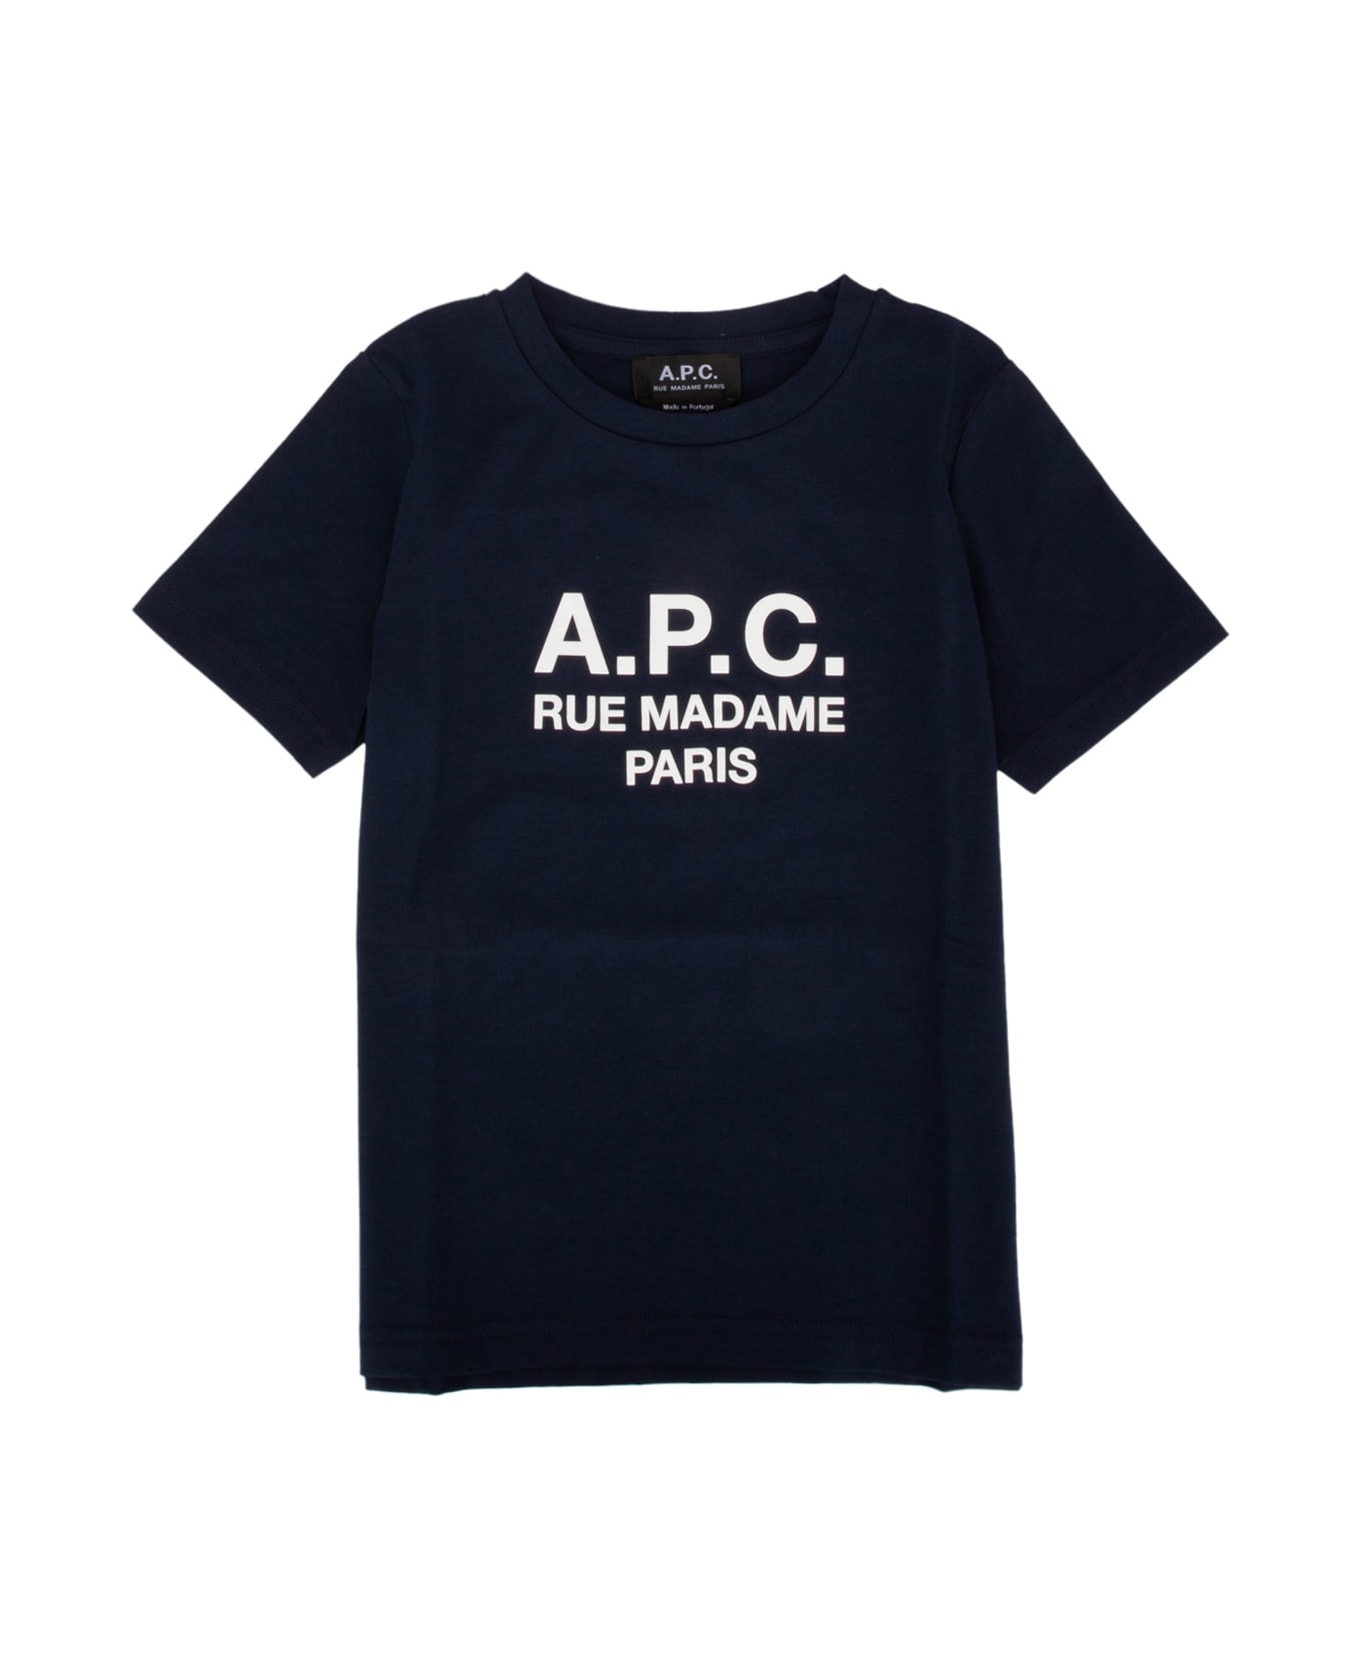 A.P.C. T-shirt - IAJNAVY